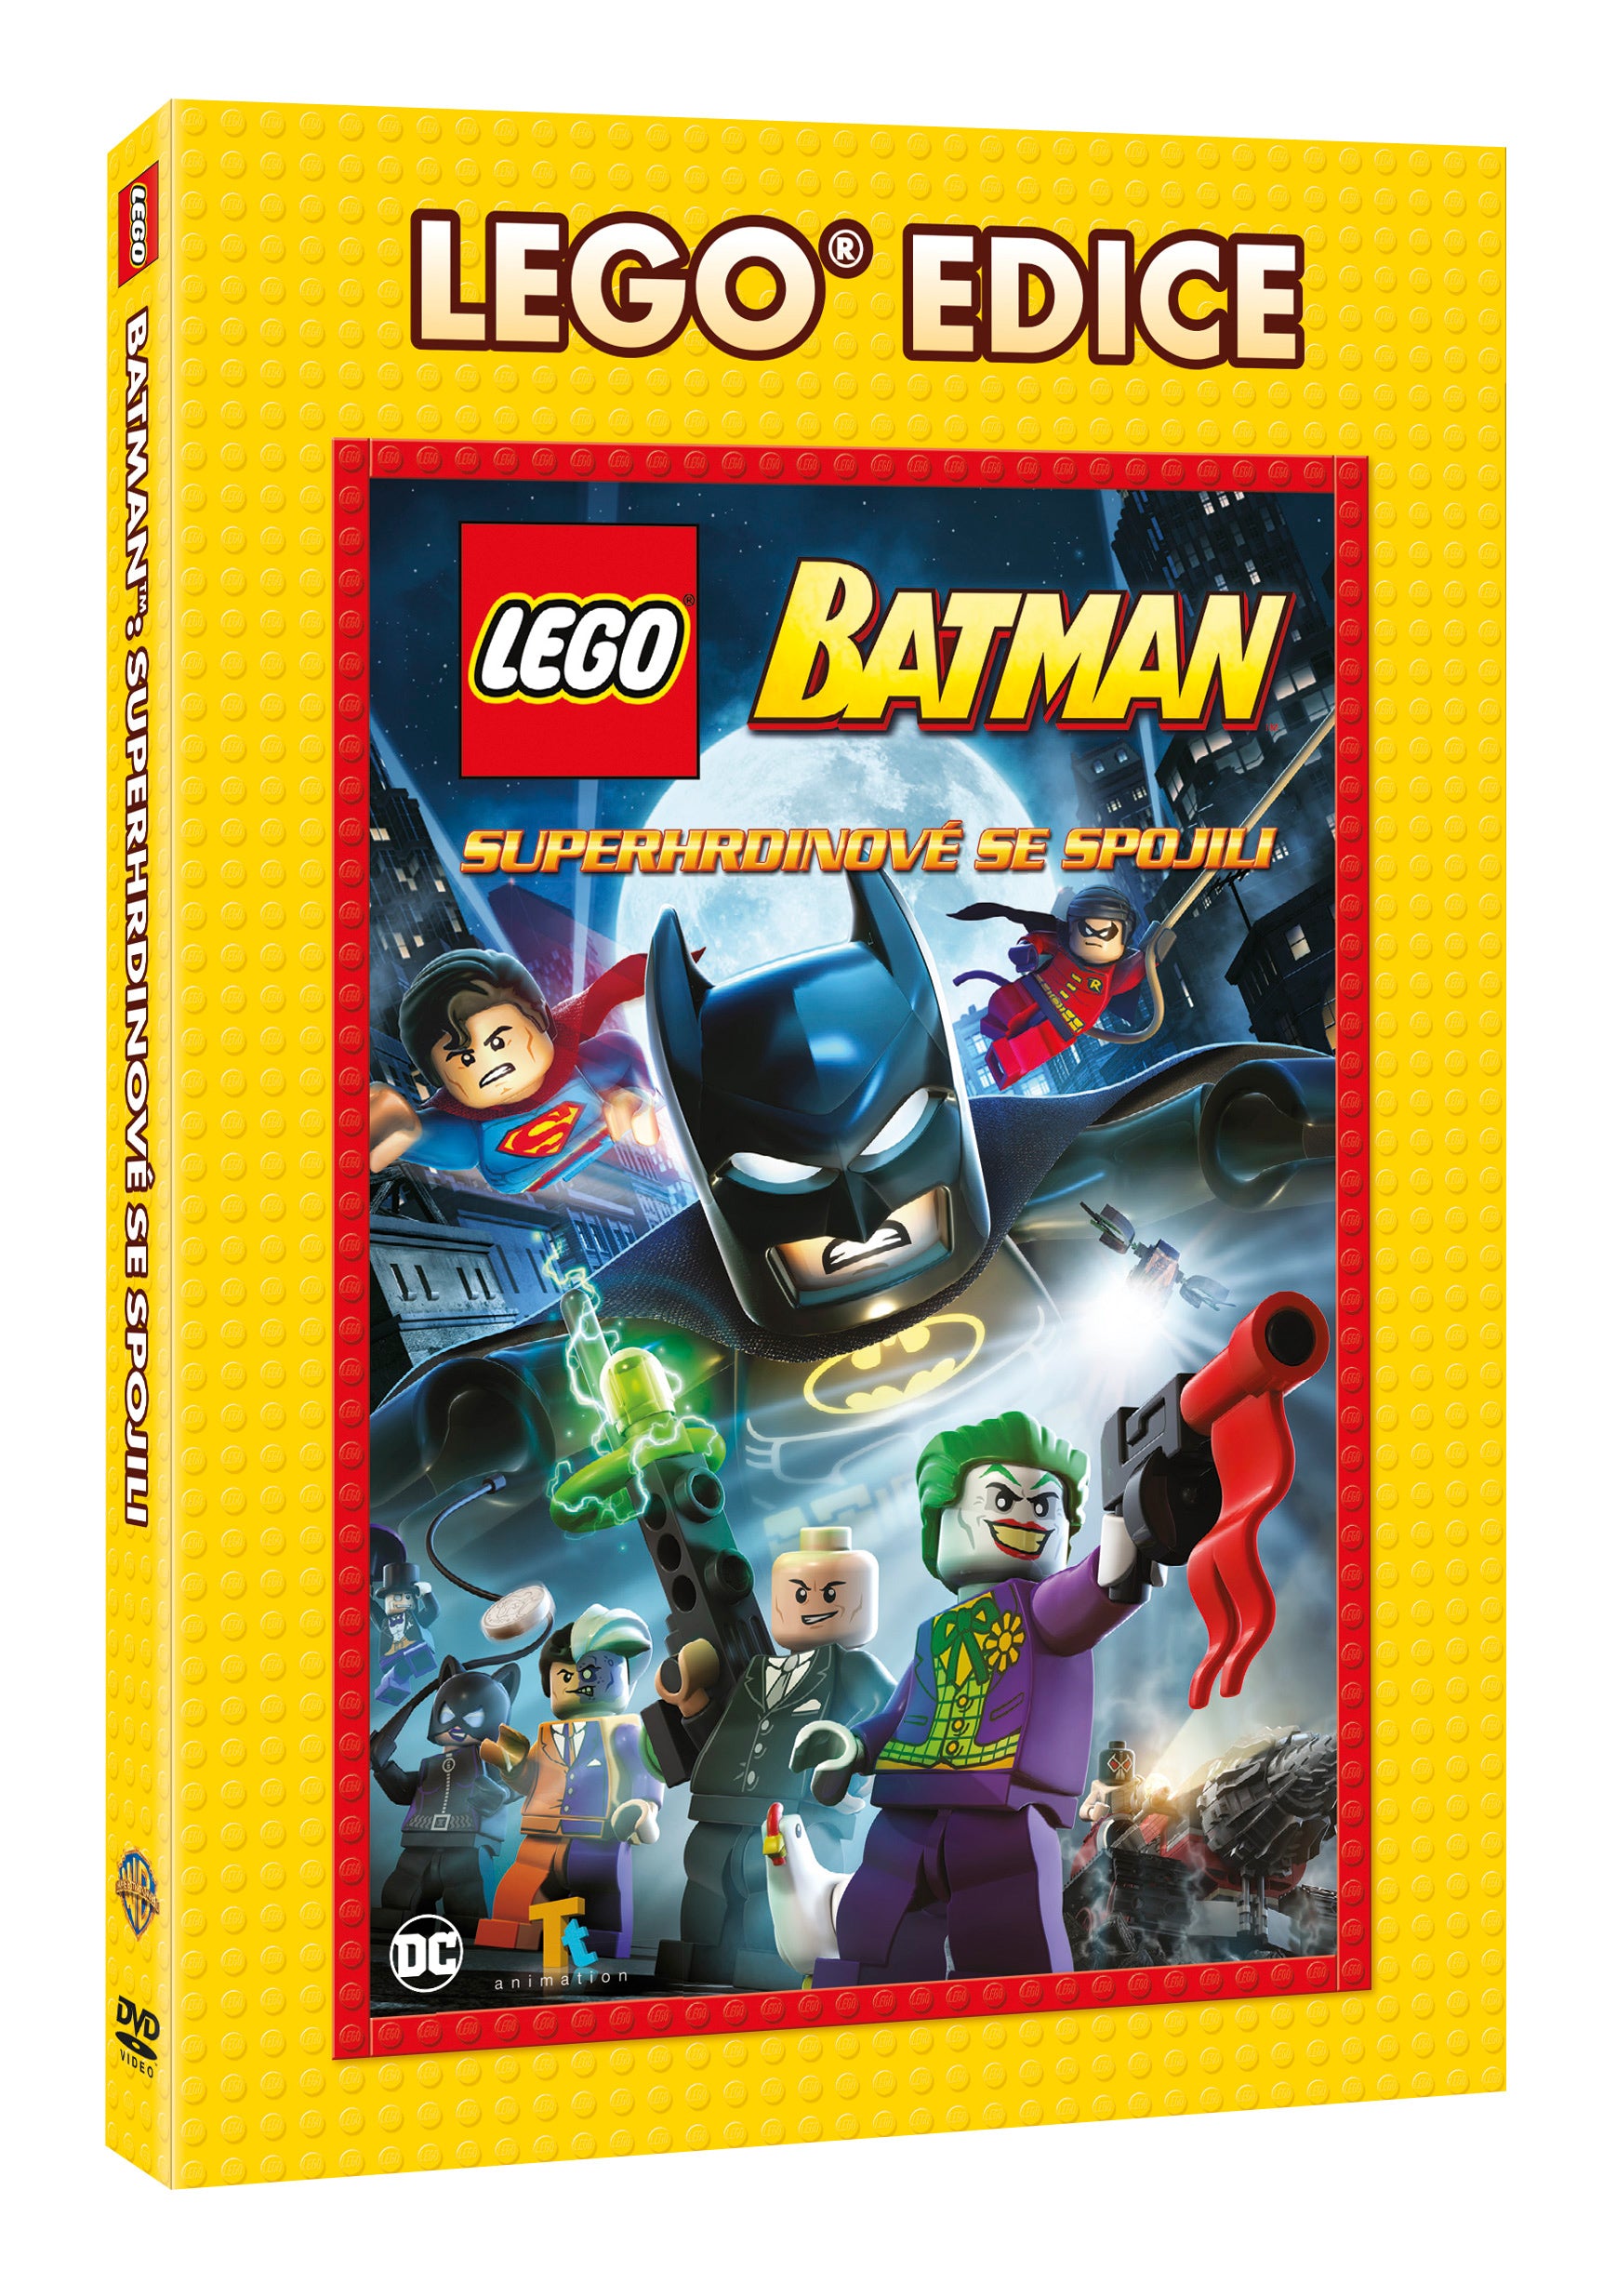 Lego: Batman - Edice Lego filmy DVD / LEGO: Batman Movie